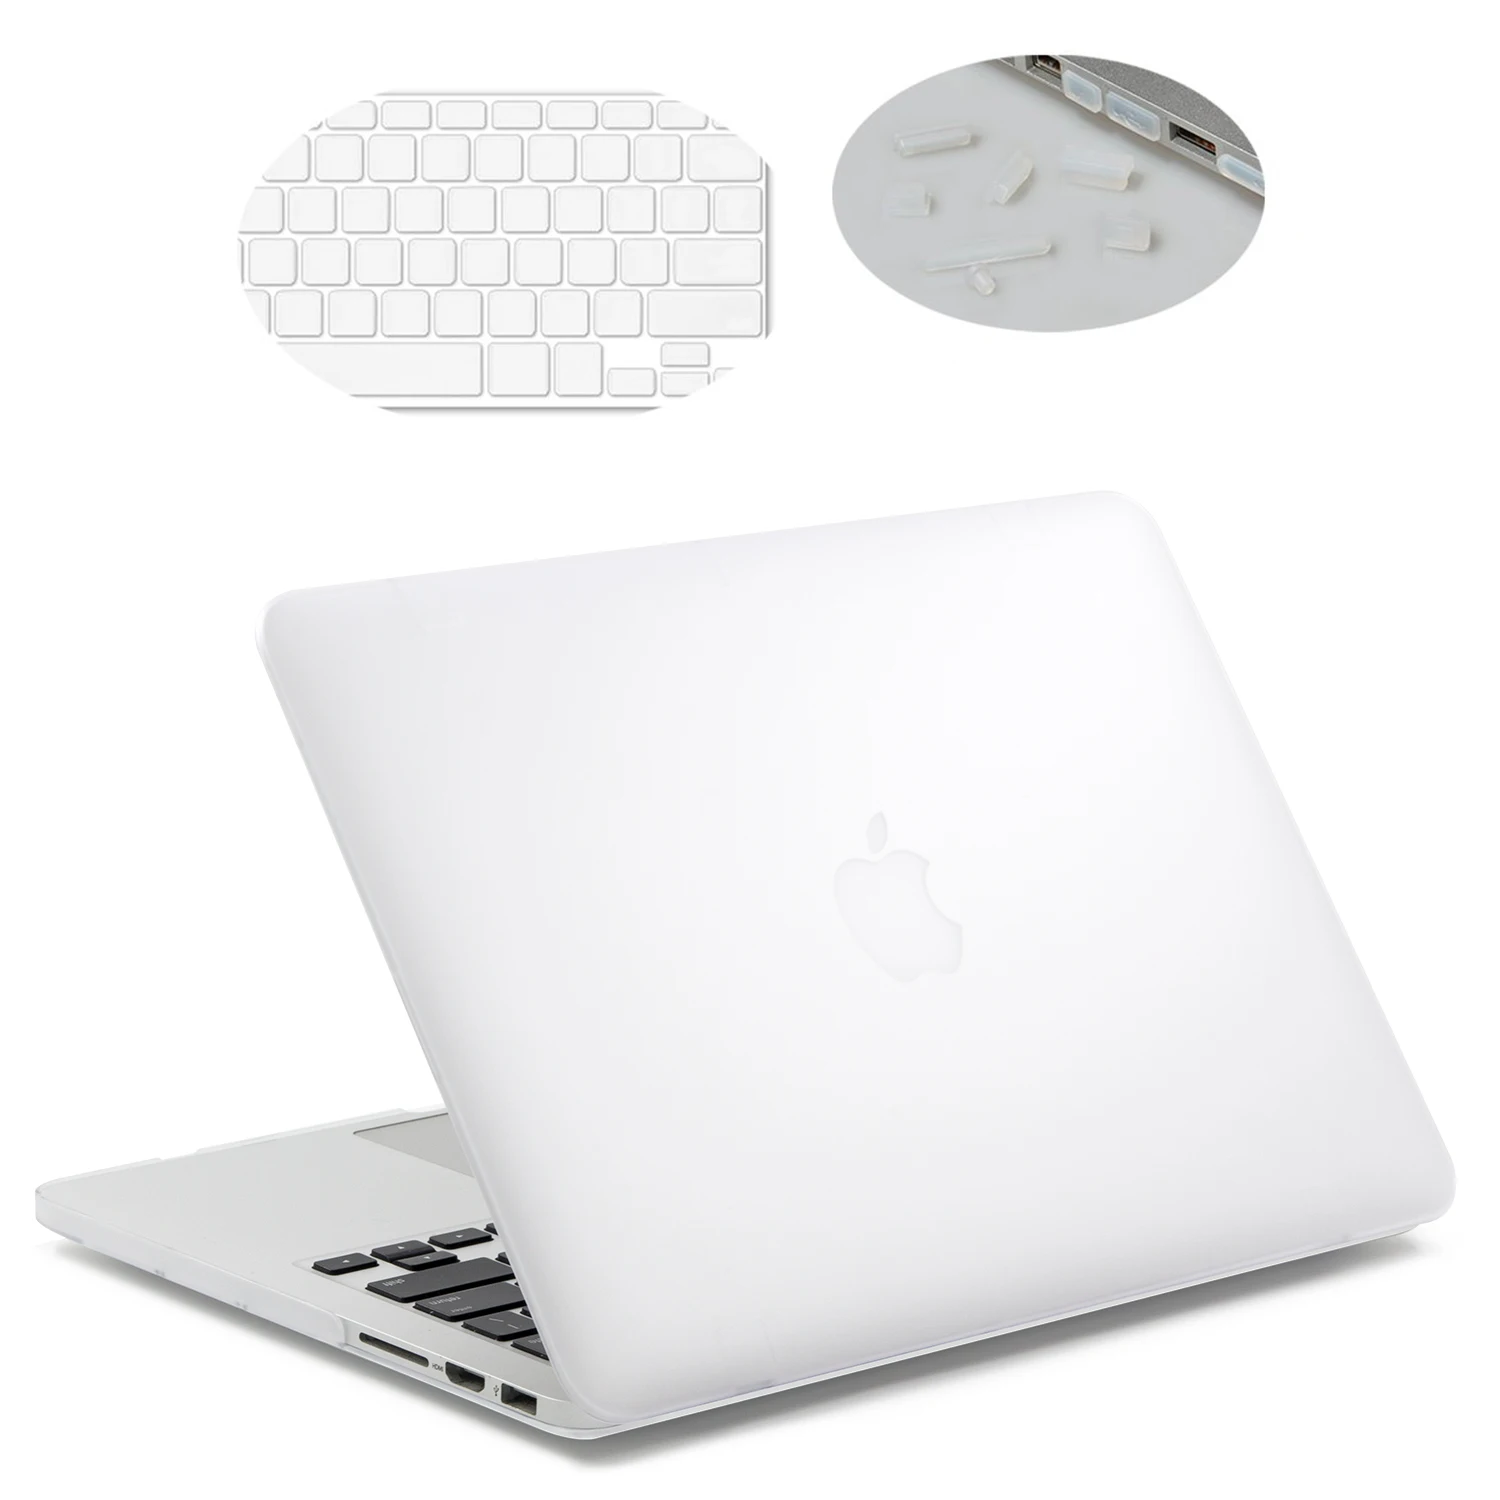 Чехол для ноутбука Lention для MacBook Air, 13 дюймов, с портами Thunderbolt 3, модель A1932, поставляется с крышкой клавиатуры и разъемами для портов - Цвет: white